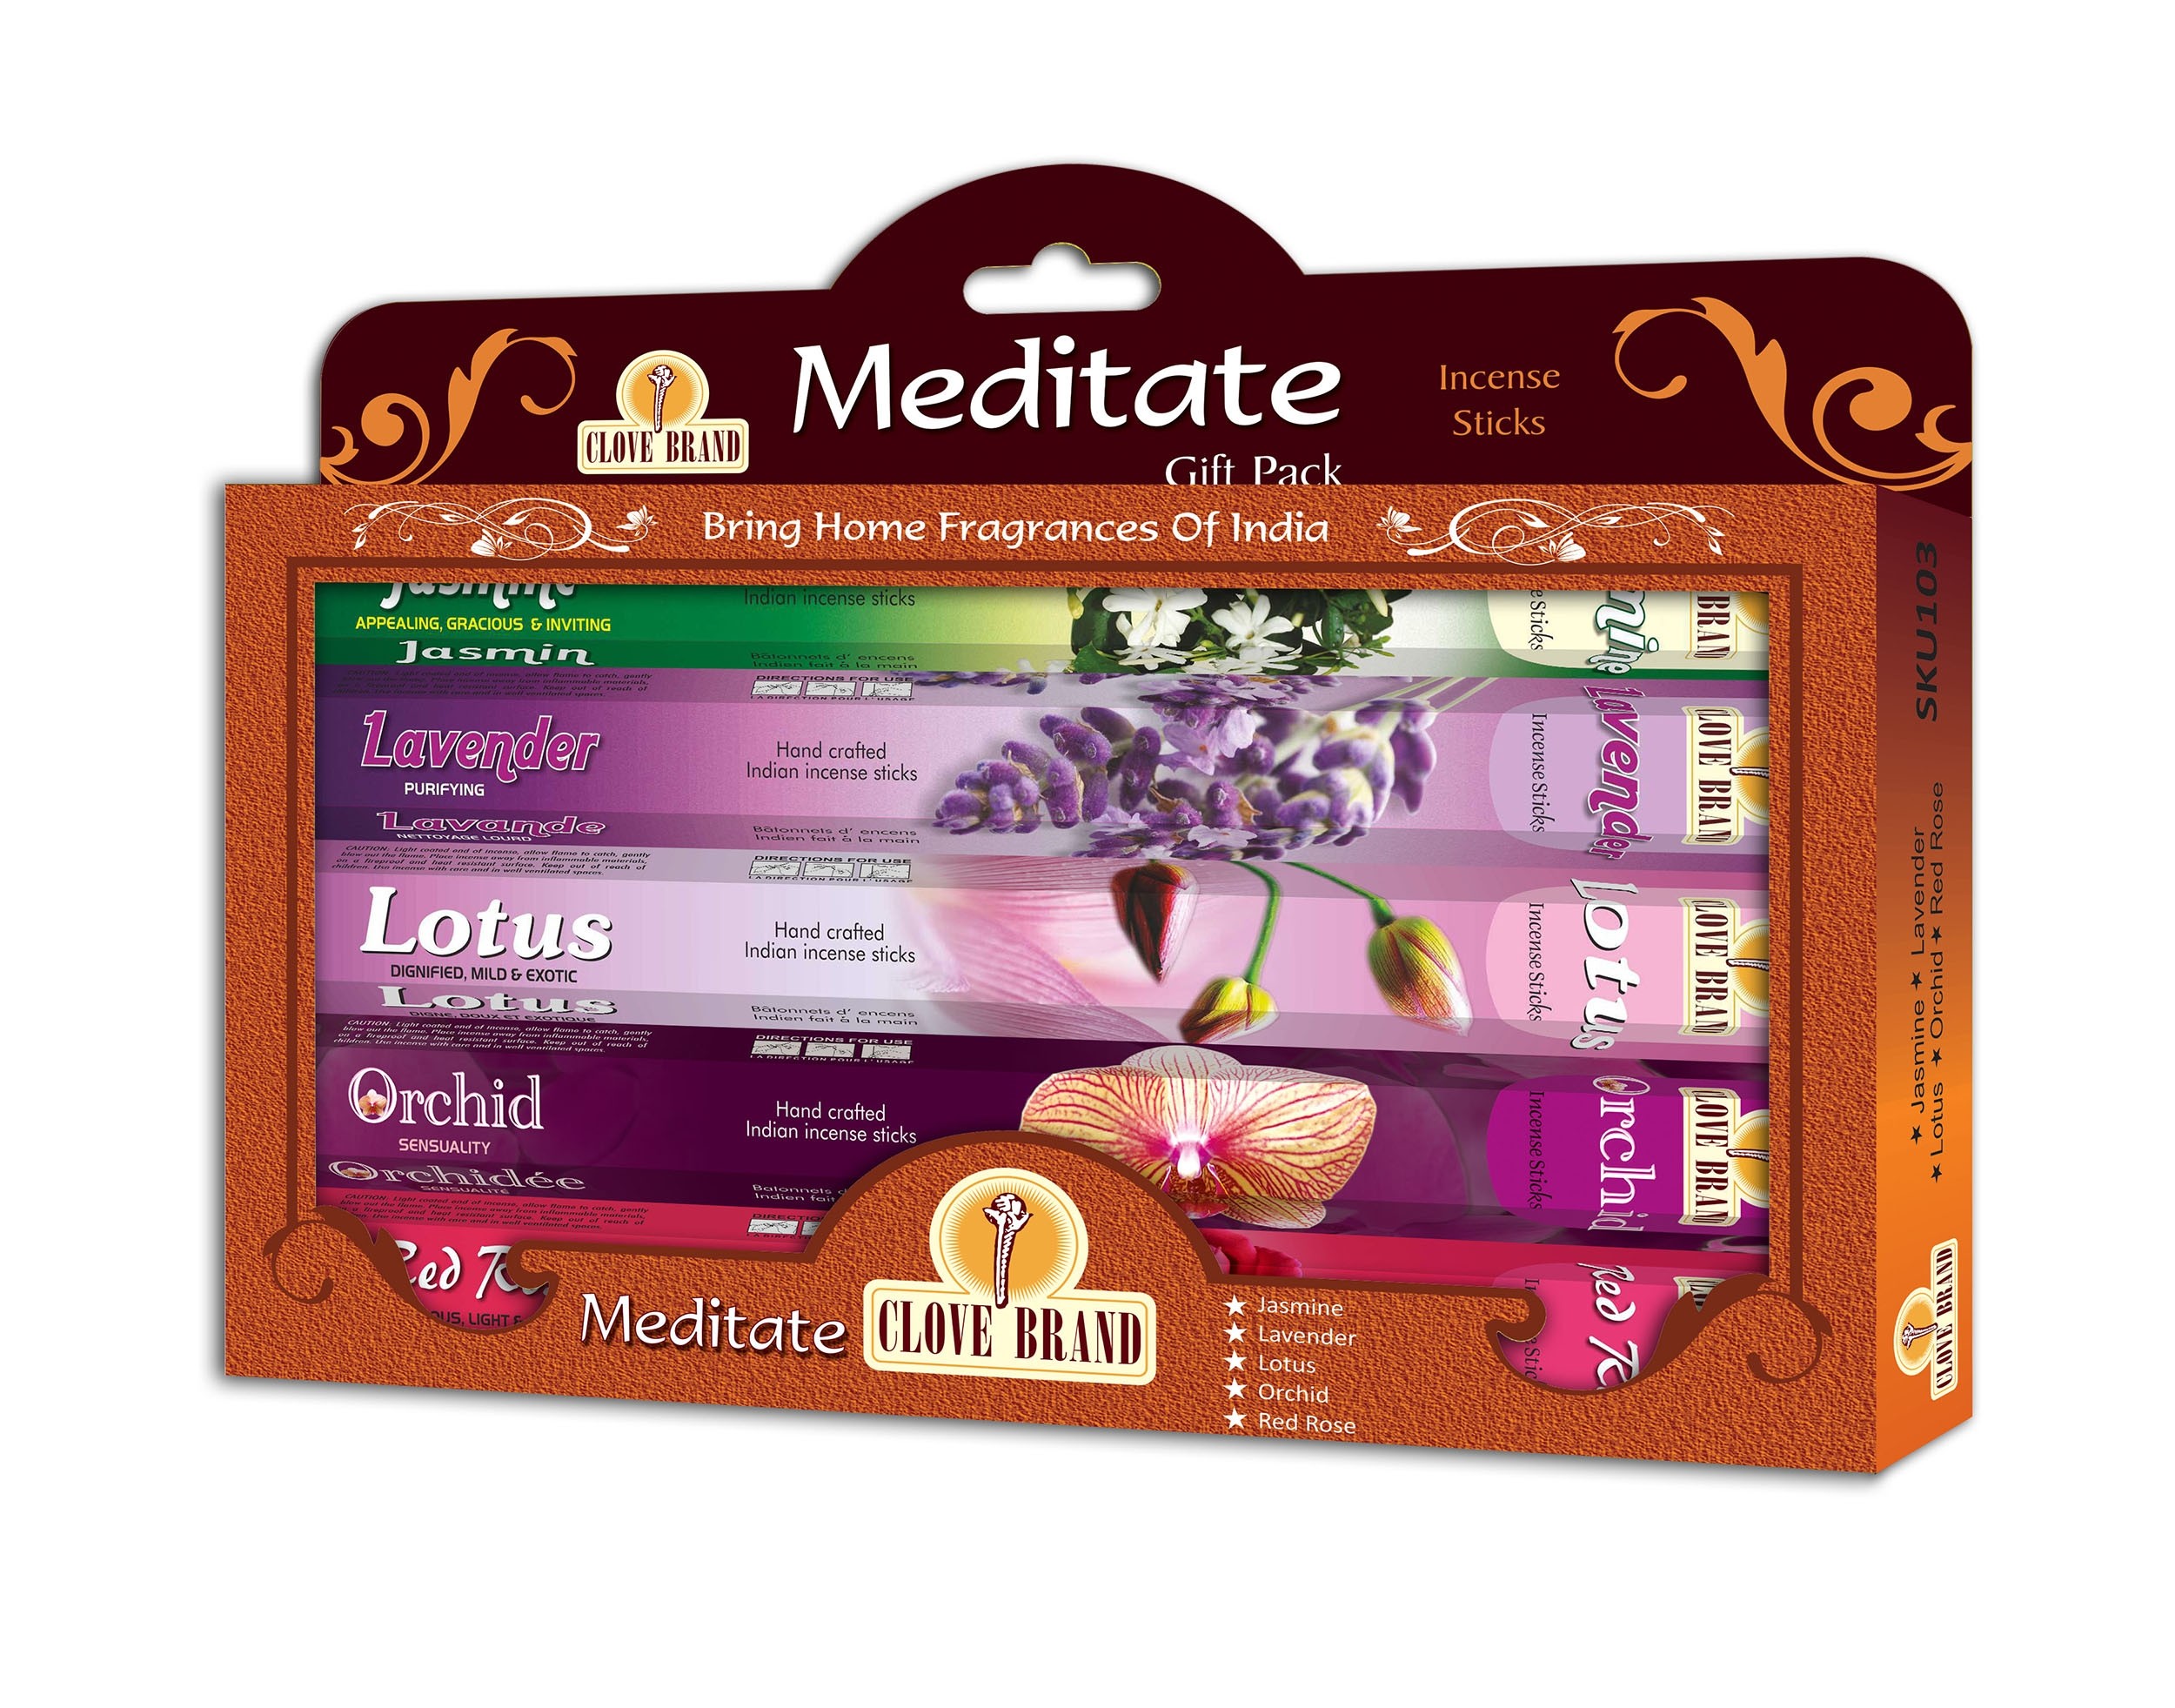 Clove Brand Weihrauch Geschenkset Meditation (5 Packungen mit 16 Sticks)